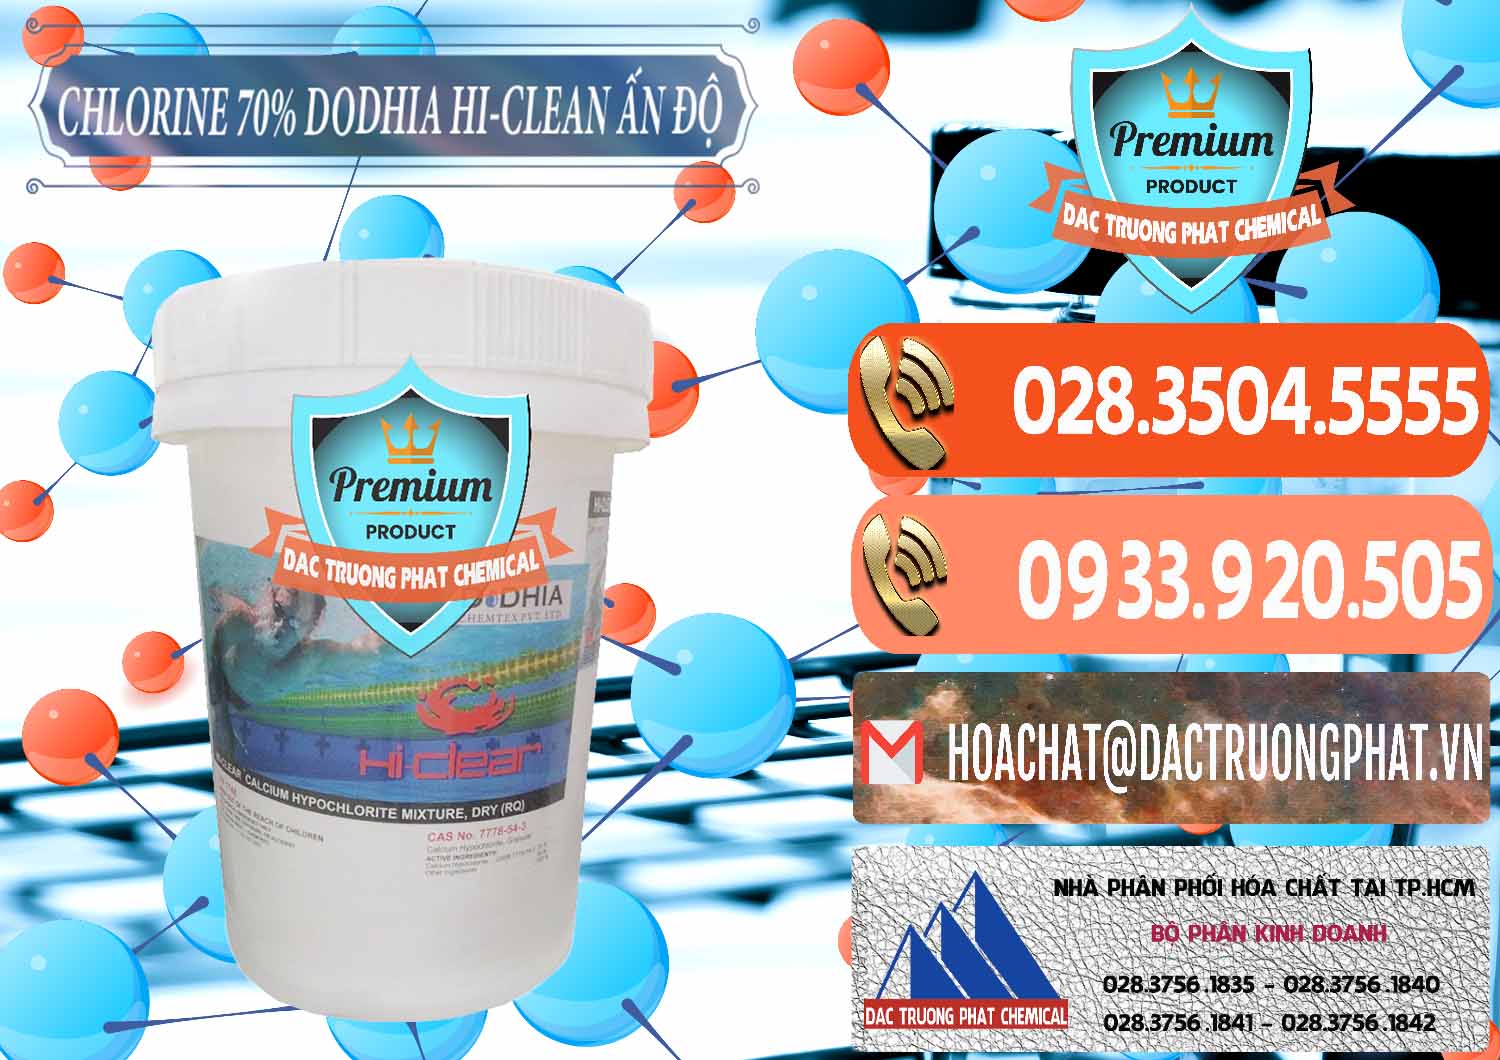 Cty kinh doanh ( bán ) Chlorine – Clorin 70% Dodhia Hi-Clean Ấn Độ India - 0214 - Công ty chuyên nhập khẩu & phân phối hóa chất tại TP.HCM - hoachatmientay.com